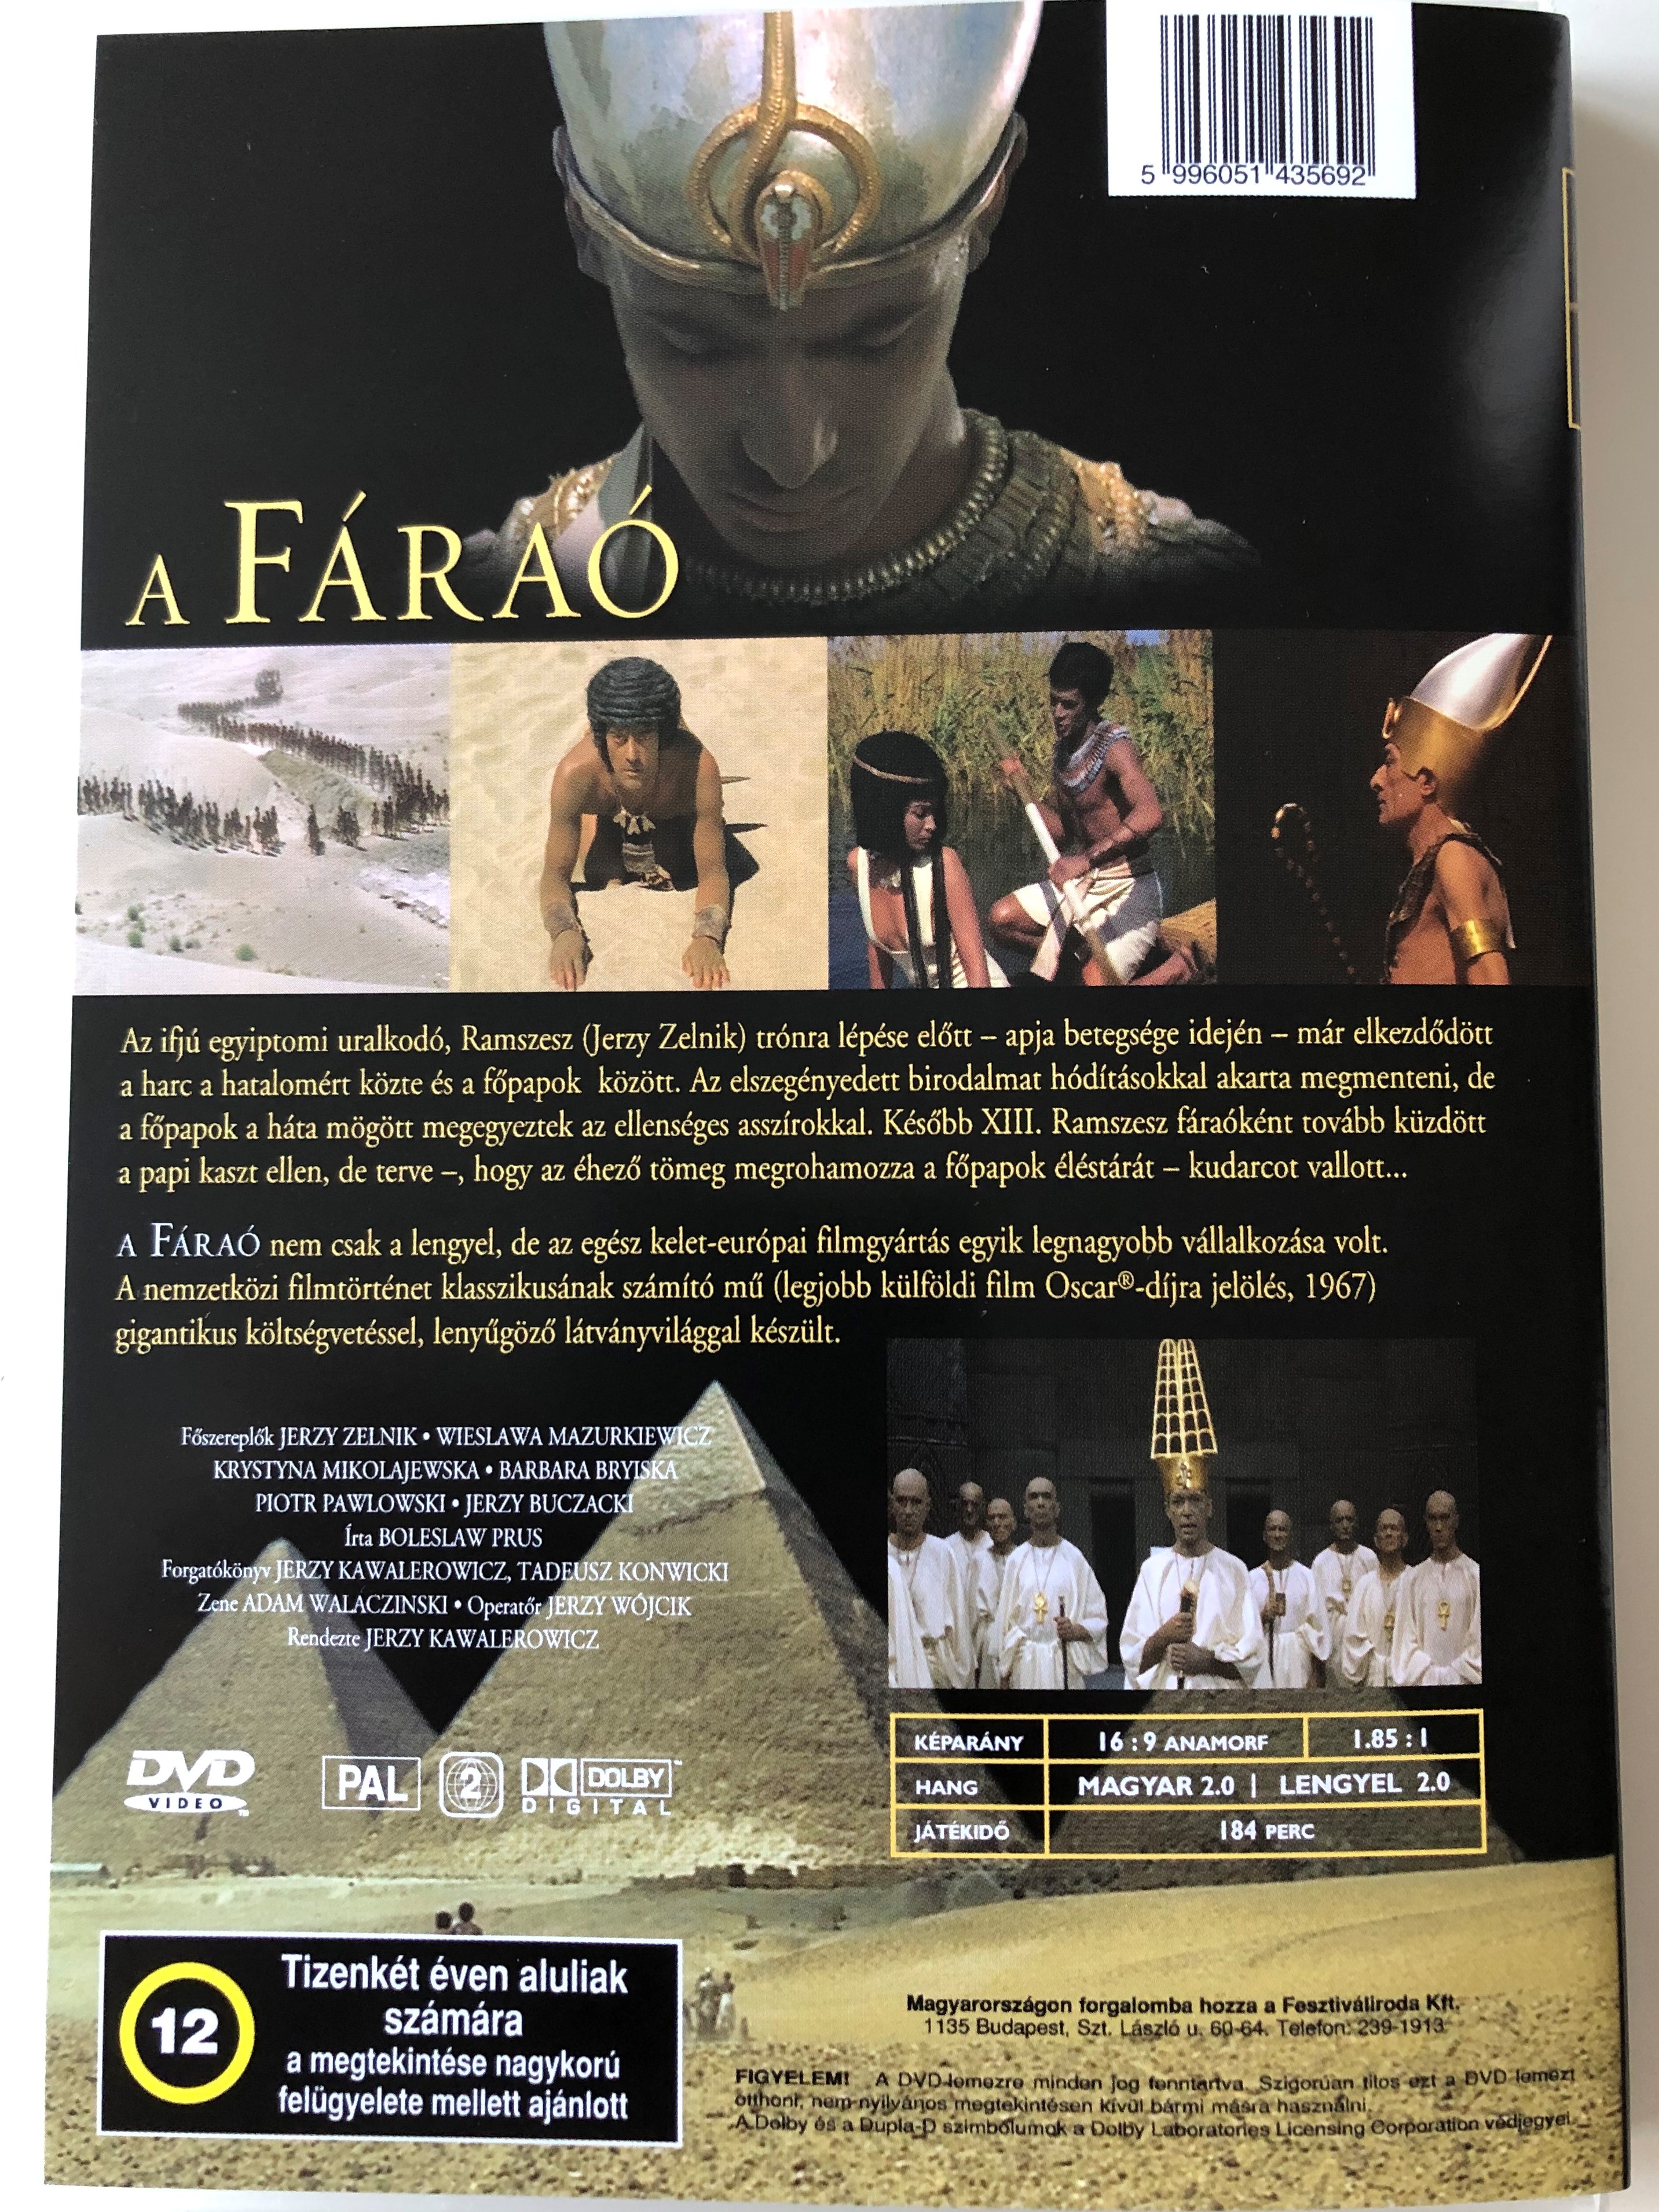 Faraon (Pharaoh) DVD 1966 A Fáraó 1